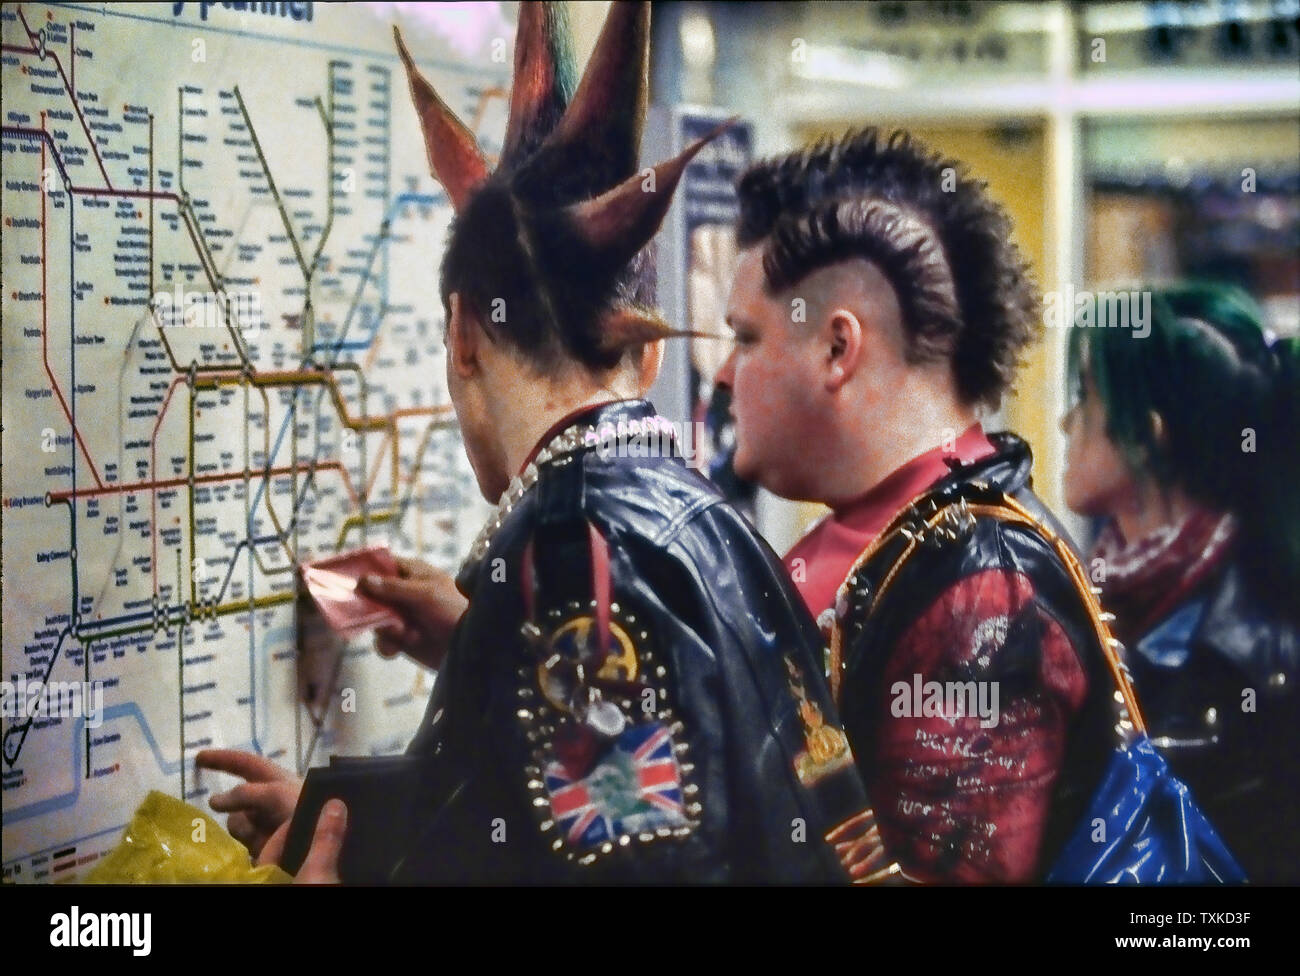 Punks checking tube map in London Underground, England, UK. Stock Photo